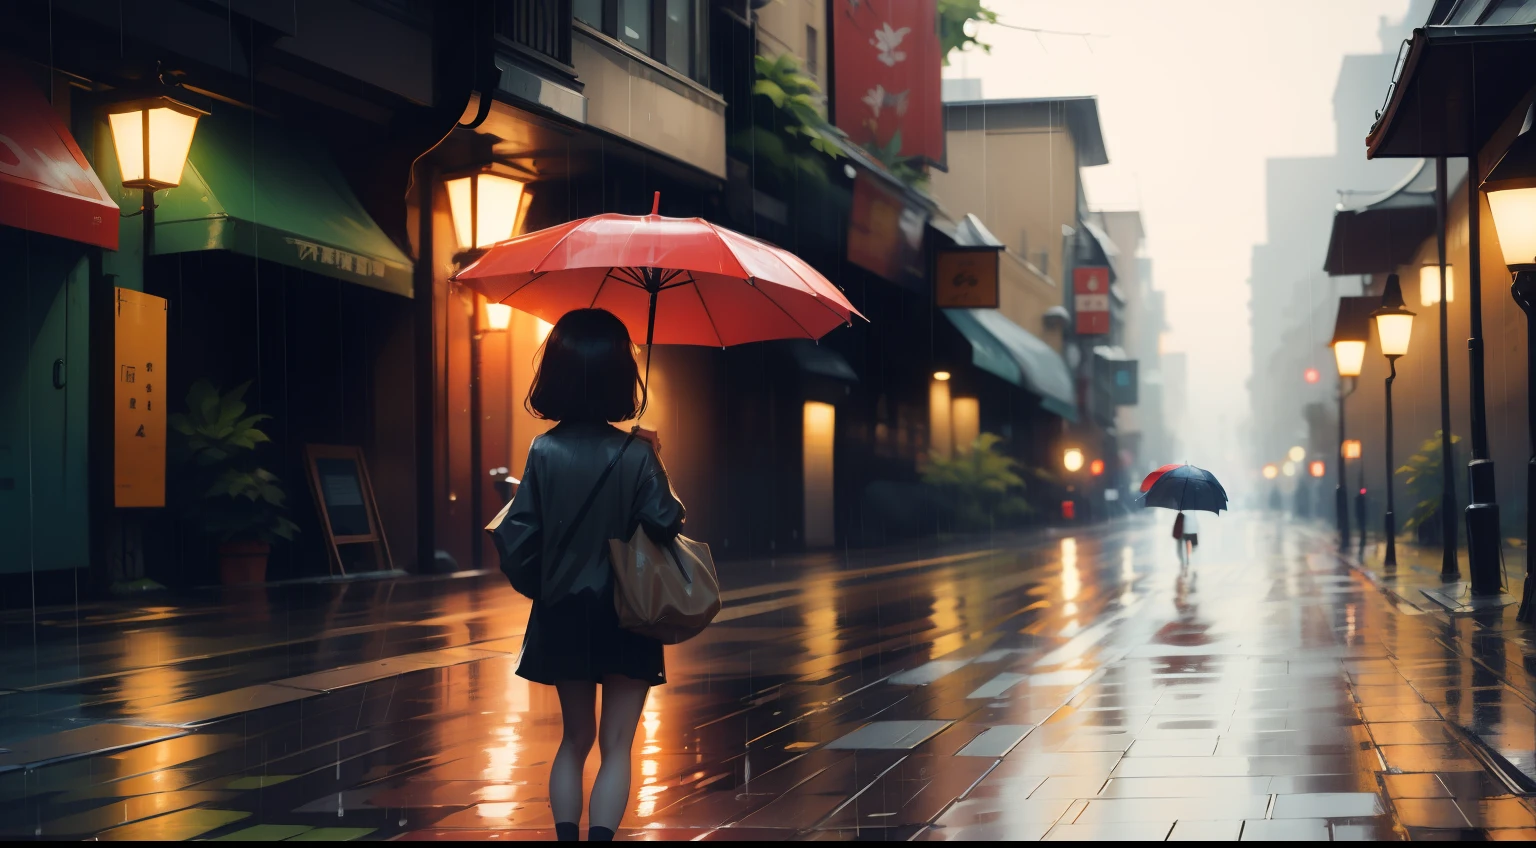 Atrás de um guarda-chuva na chuva